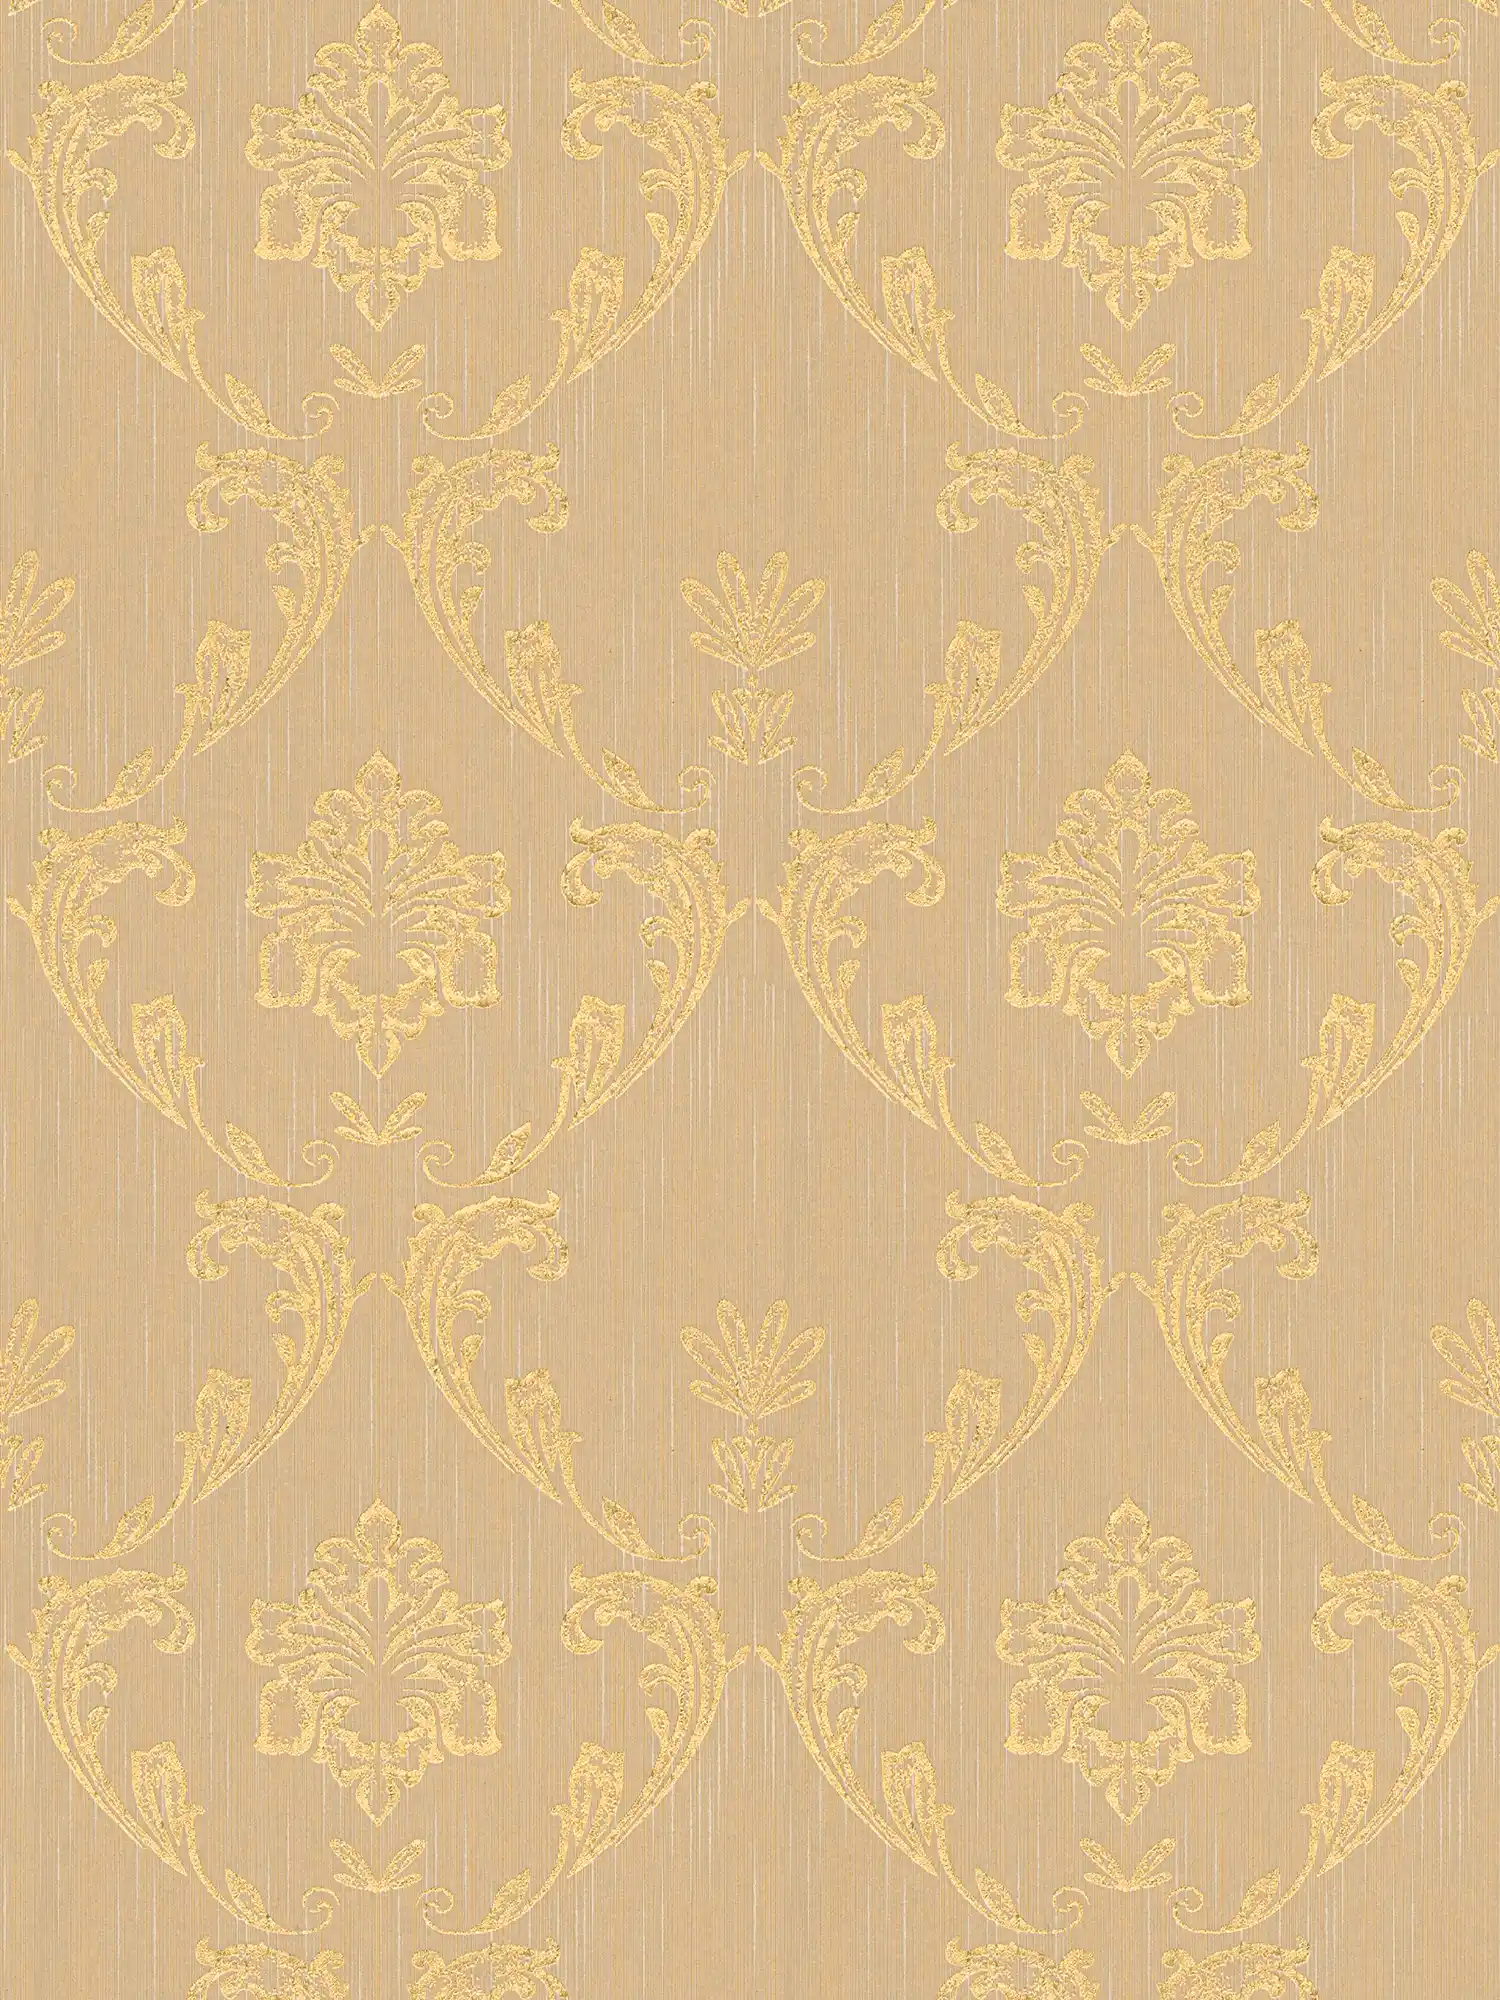 Papier peint ornemental avec éléments floraux dorés - or, beige
